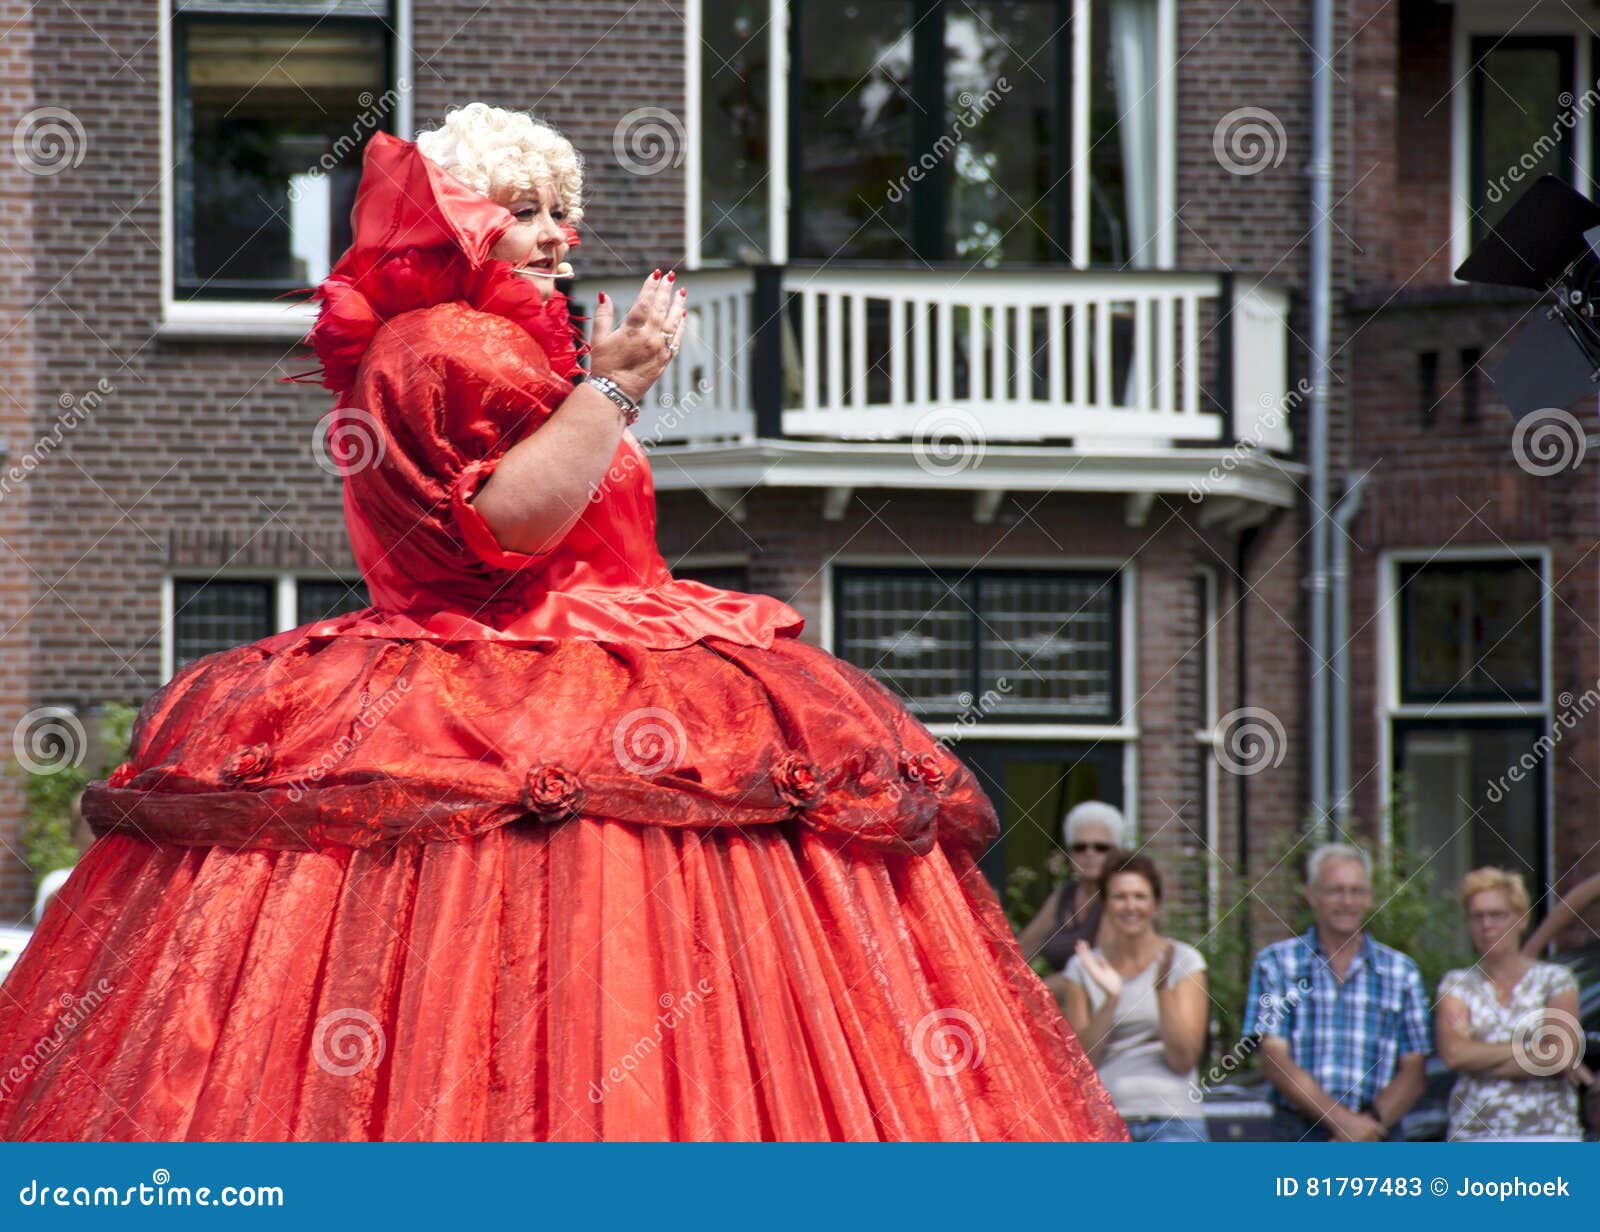 De groentenparade is een jaarlijkse gebeurtenis in de stad van Delft. Nederland, Delft, - juni 2016, vele bezoekers tijdens de Groentenparade